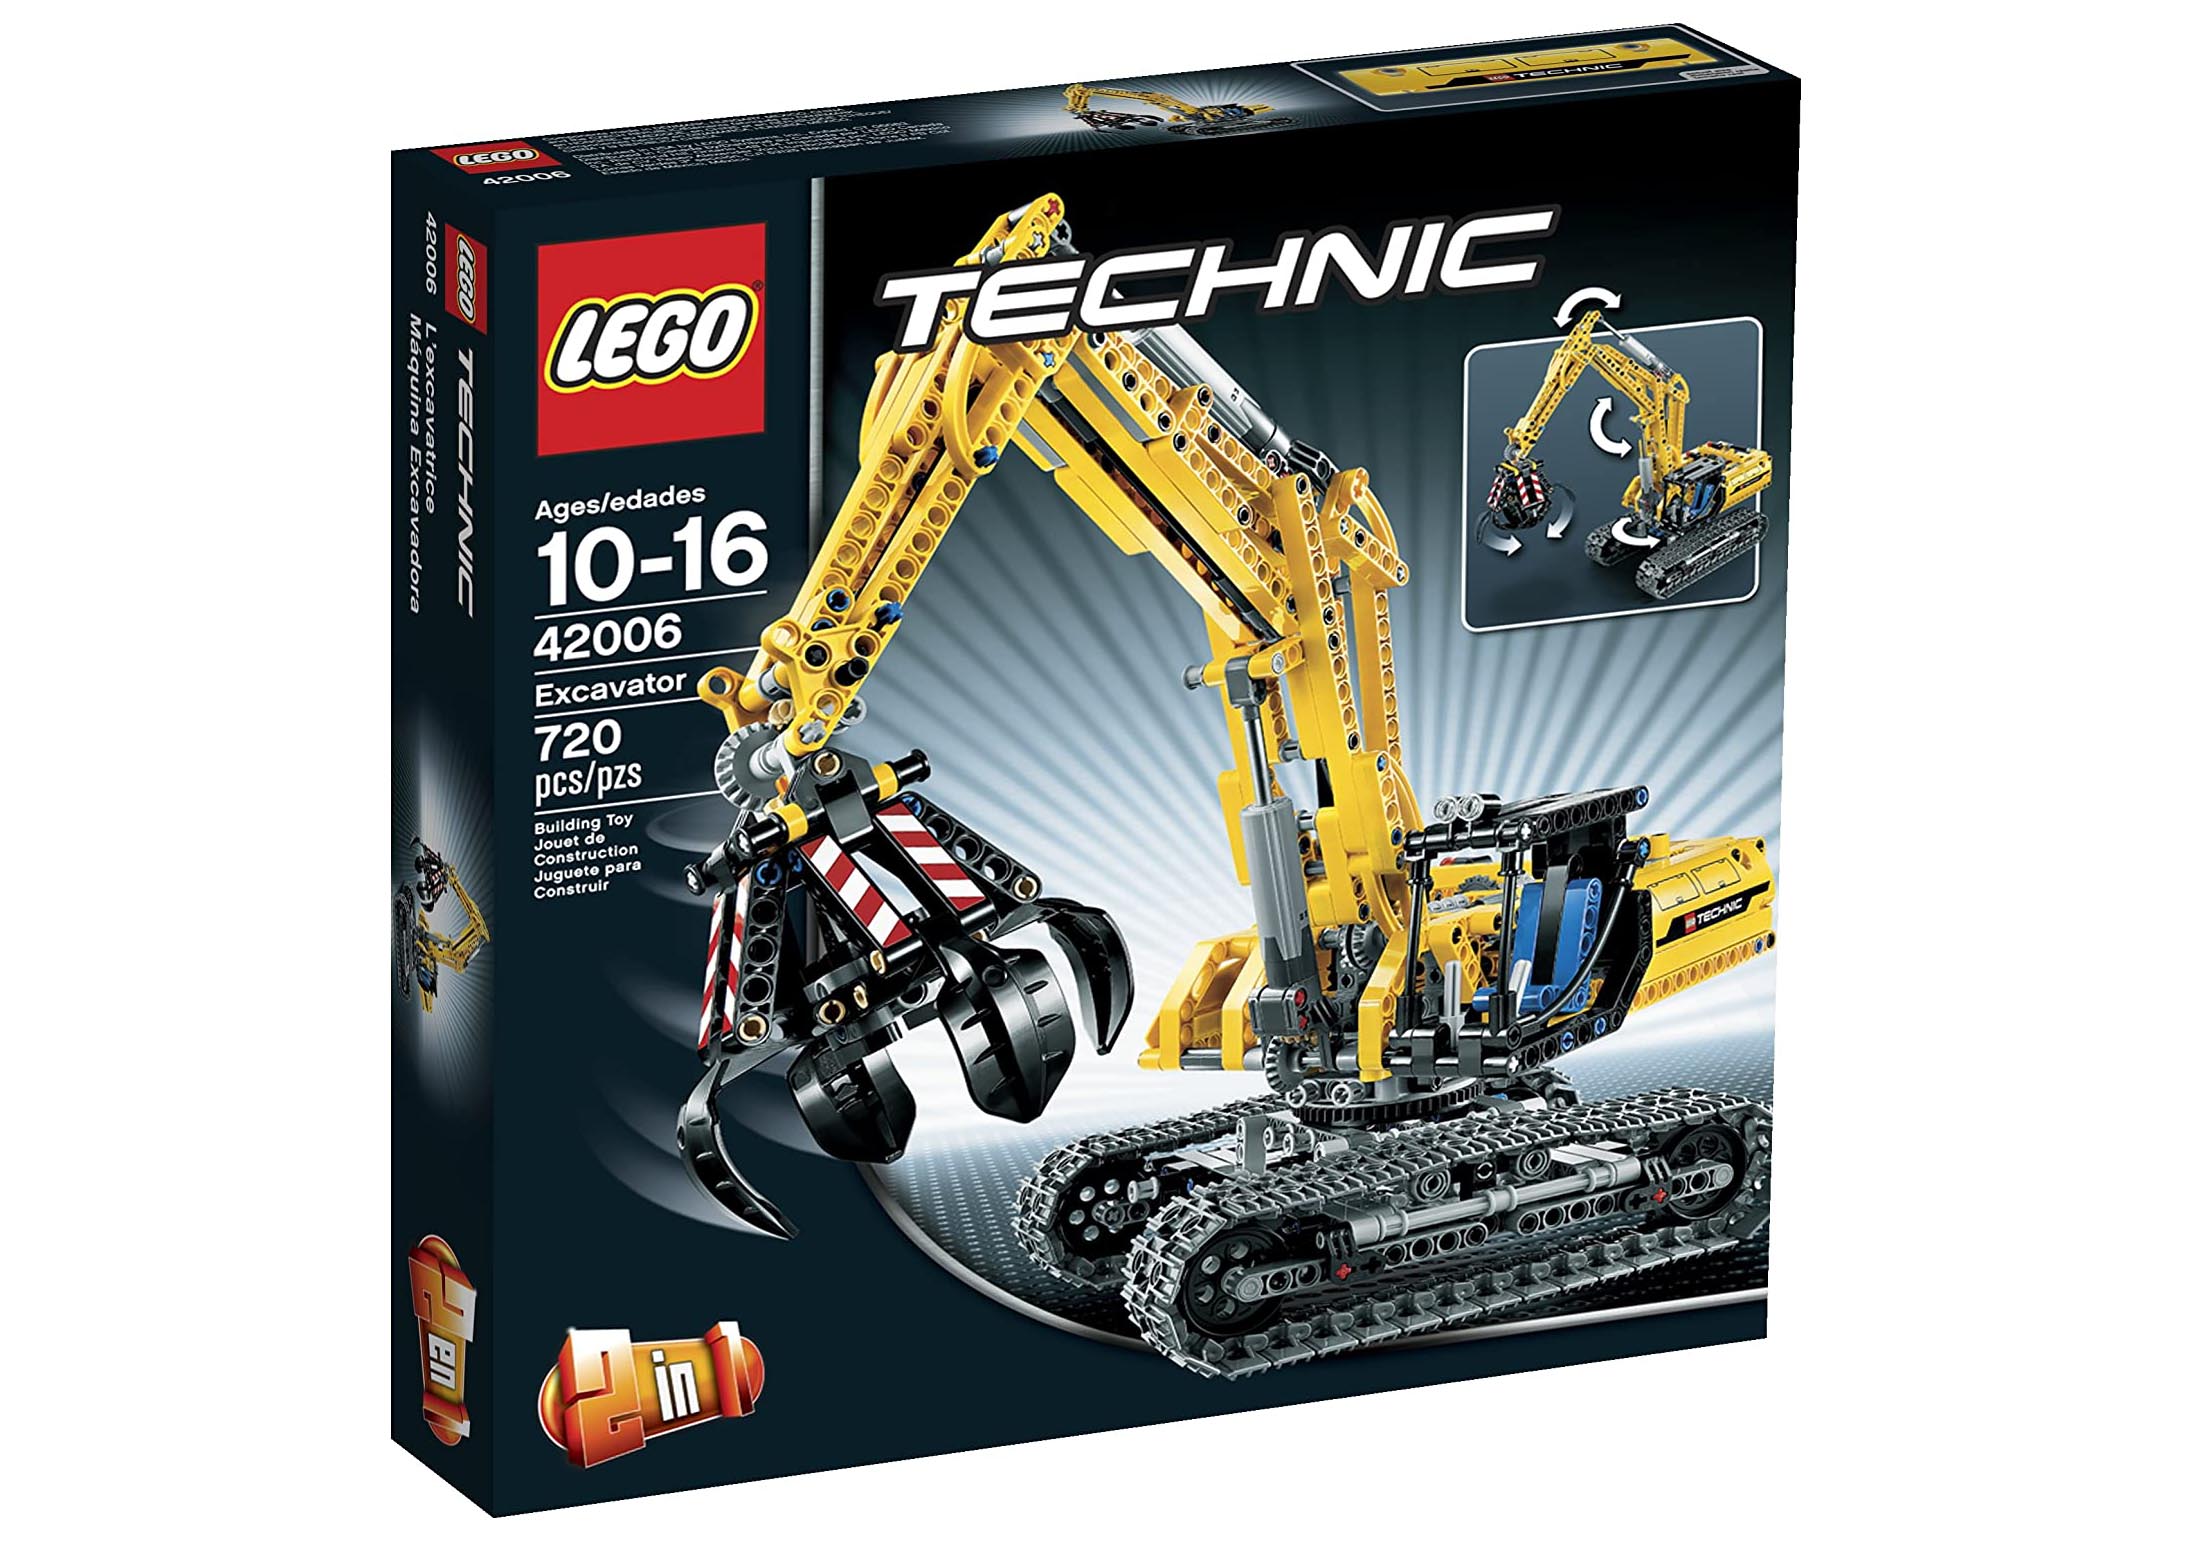 LEGO Techinic Excavator Set 42006 - US